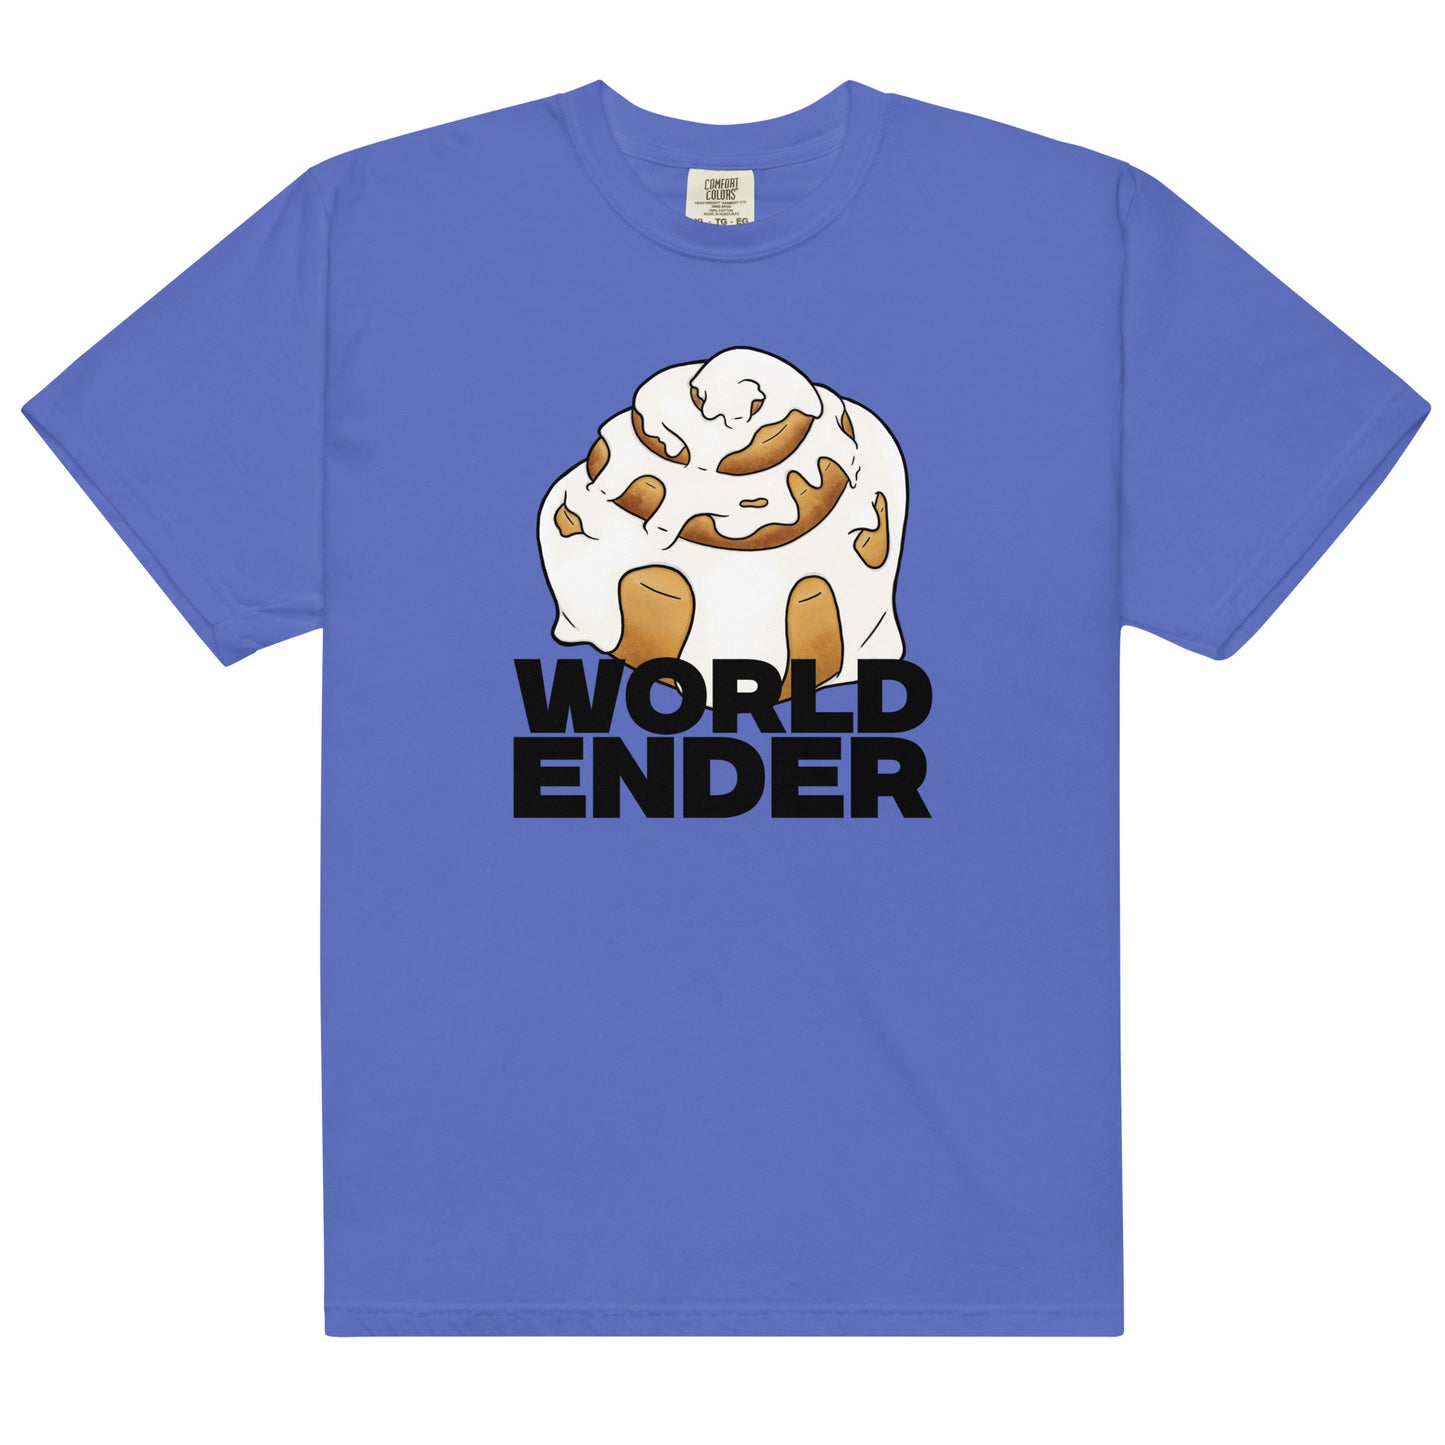 World Ender heavyweight t-shirt